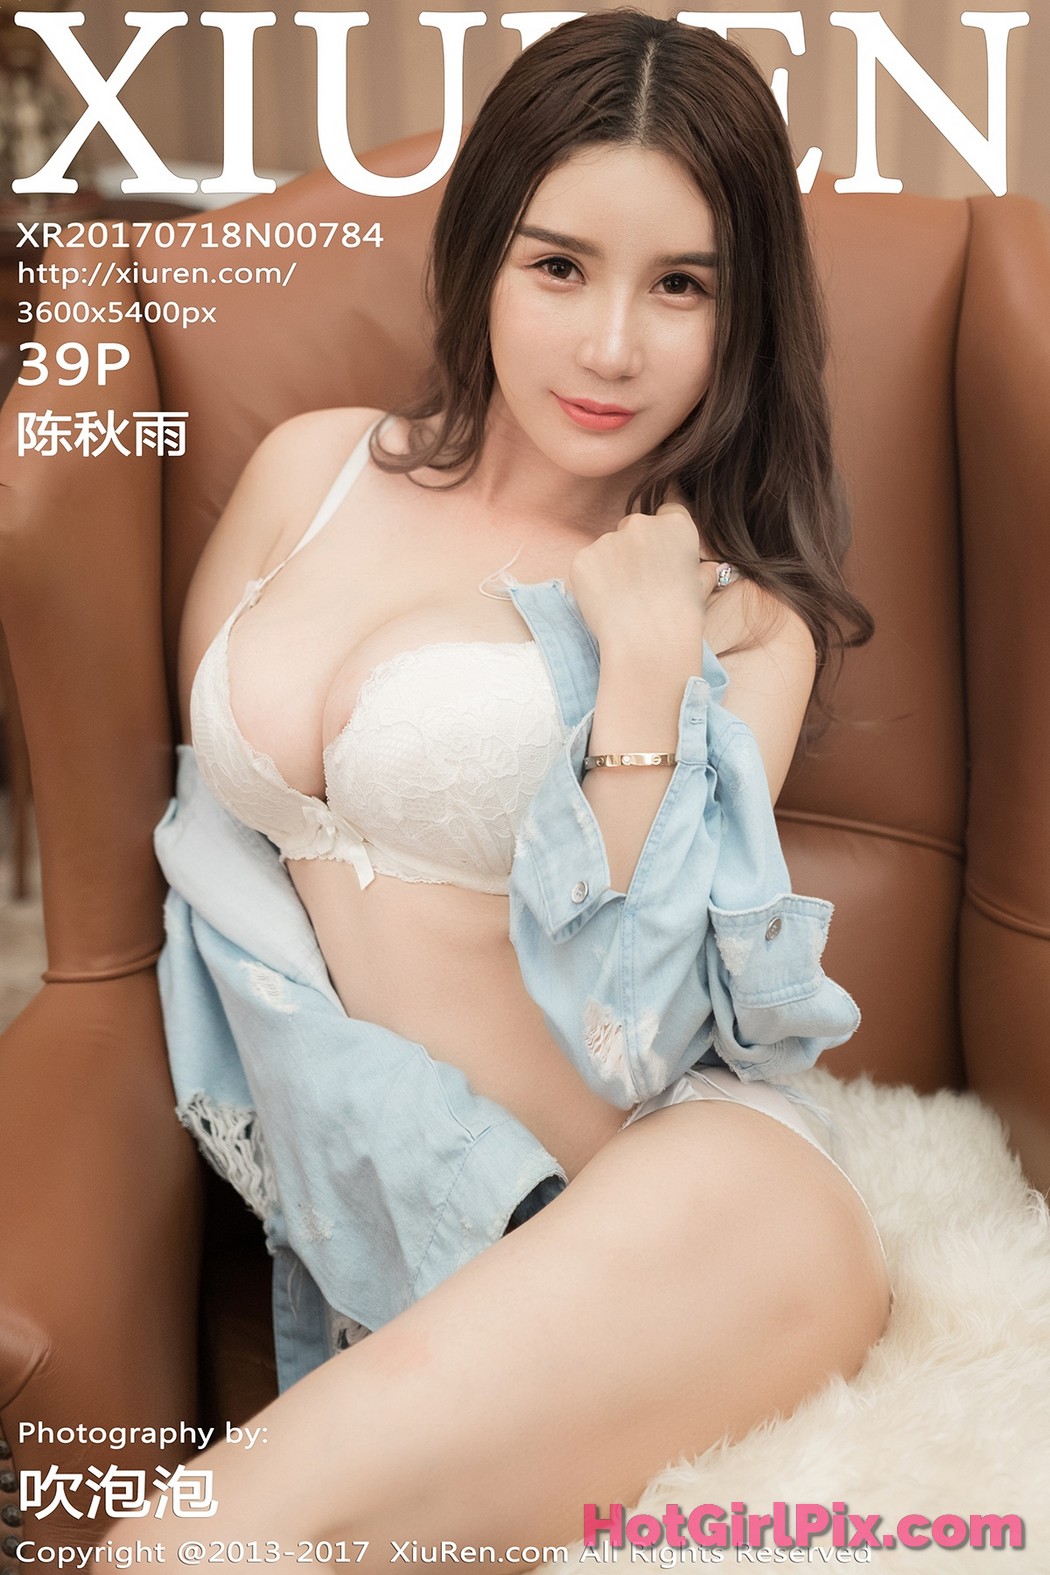 [XIUREN] No.784 Chen Qiu Yu 陈秋雨 Cover Photo